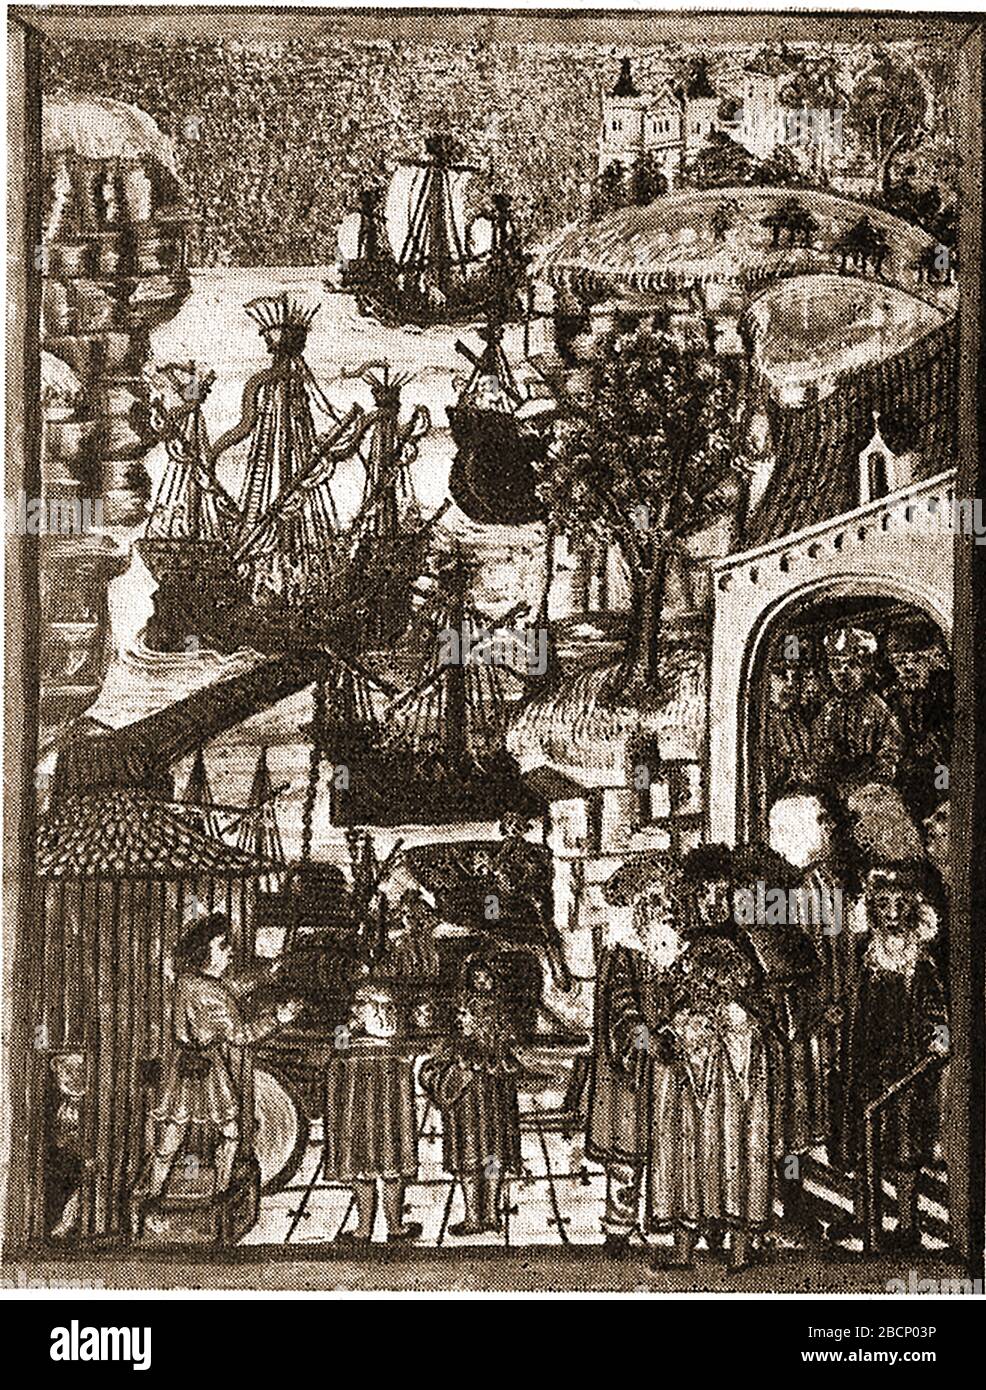 Ilustración del siglo XV - HANHA PUERTOS mercantes de la liga Hanseática en HAMBURGO. Hanse más tarde deletreado como Hansa,[3] era la palabra alemana alta vieja para un convoy de comerciantes por tierra o mar. Foto de stock